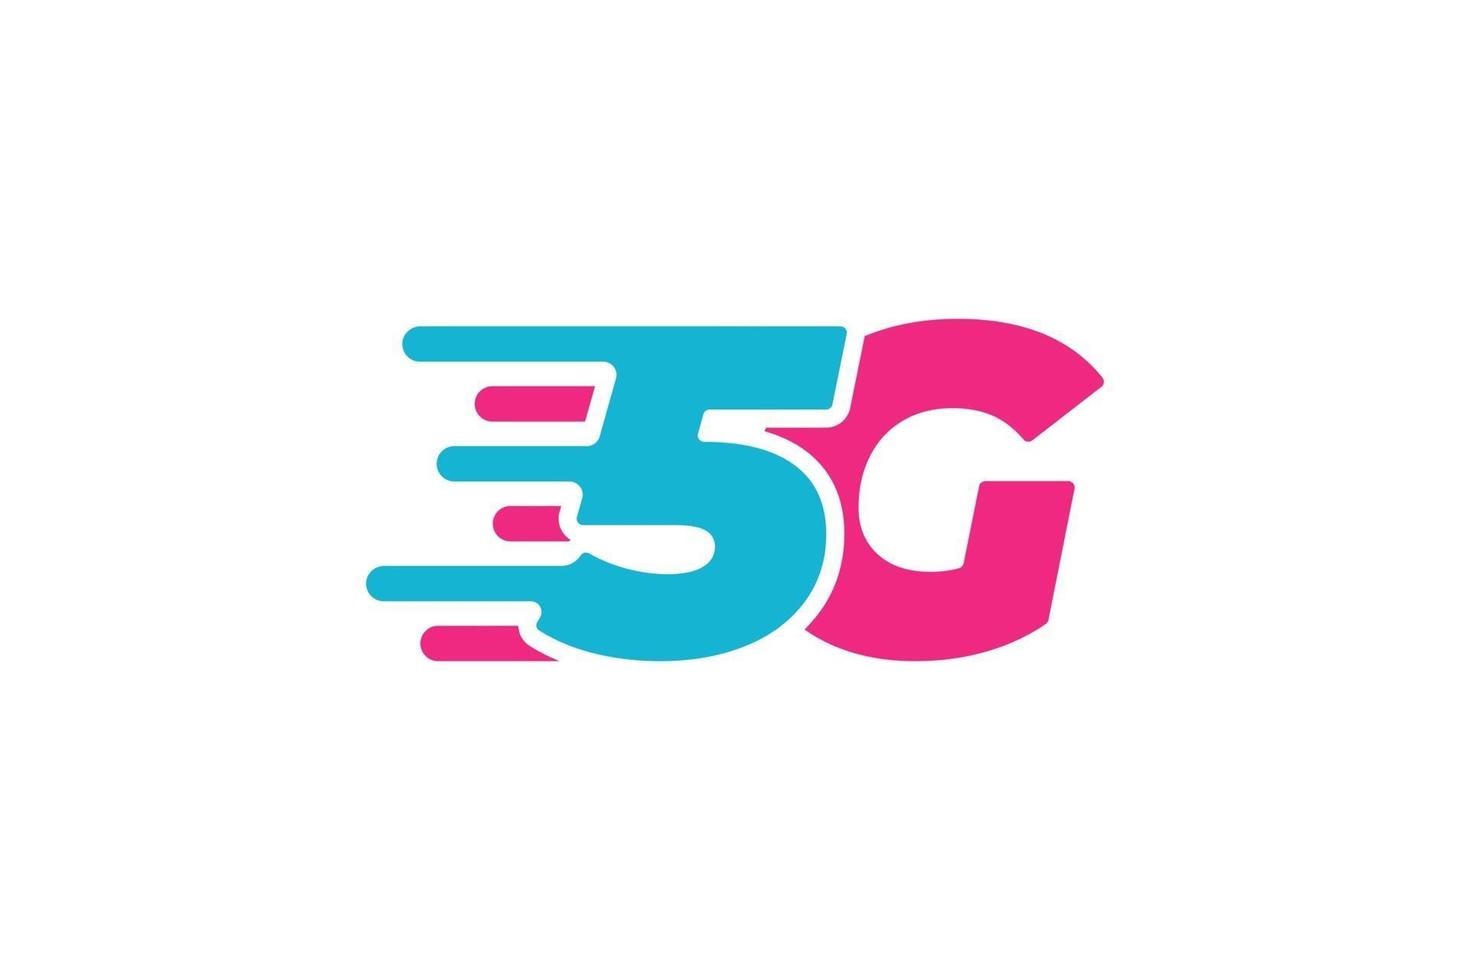 5g Netzwerkverbindungs-Geschäftssymbol. Symbol für drahtlose Highspeed-Internettechnologie der 5. Generation. Vektor 5 g Kommunikationsemblem flache Designvorlage isoliert